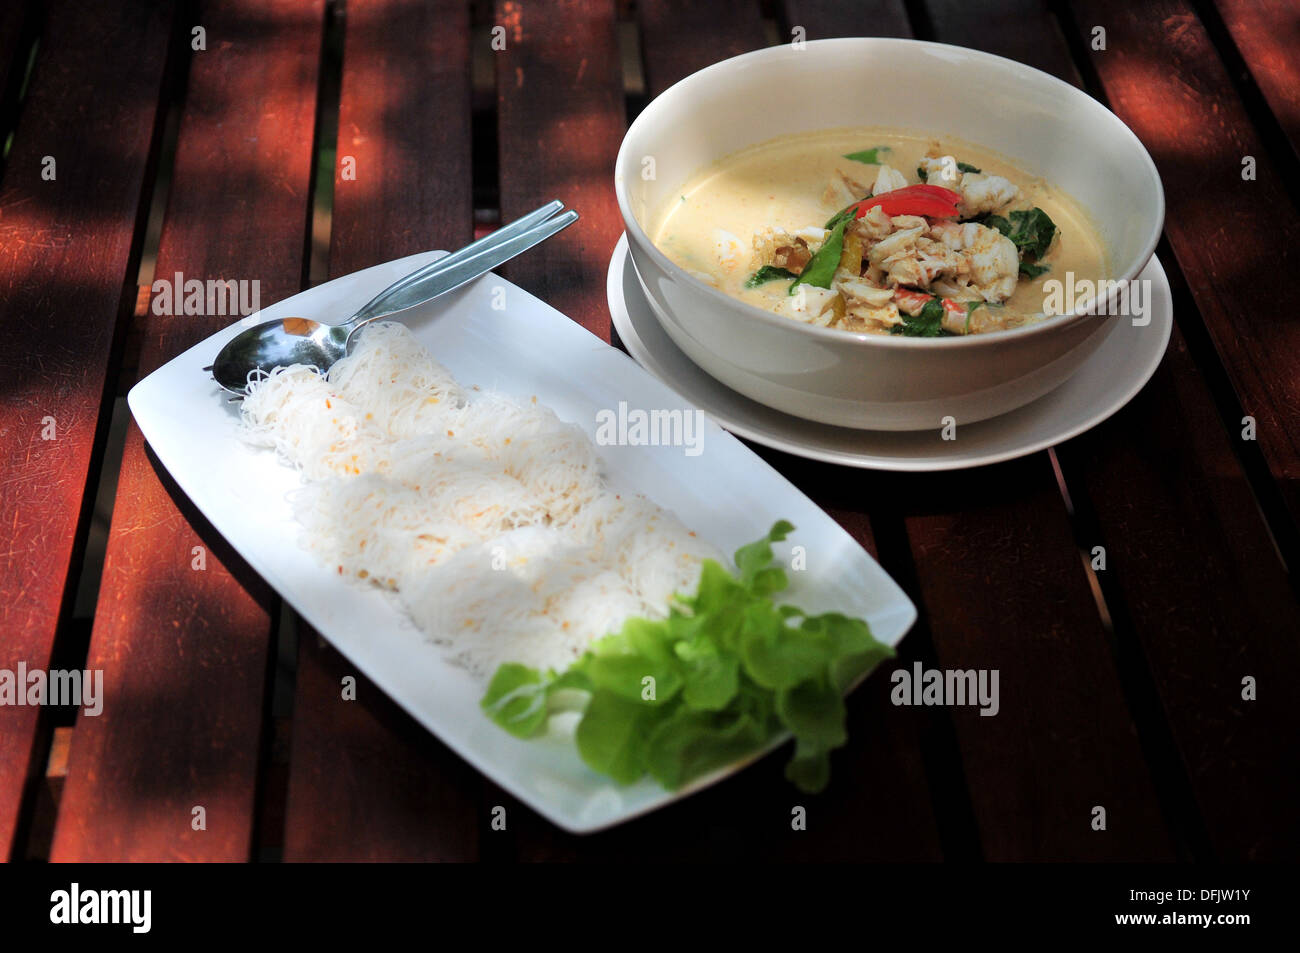 Geschmack von Thailand - Krabben-Curry mit Reisnudeln serviert Stockfoto